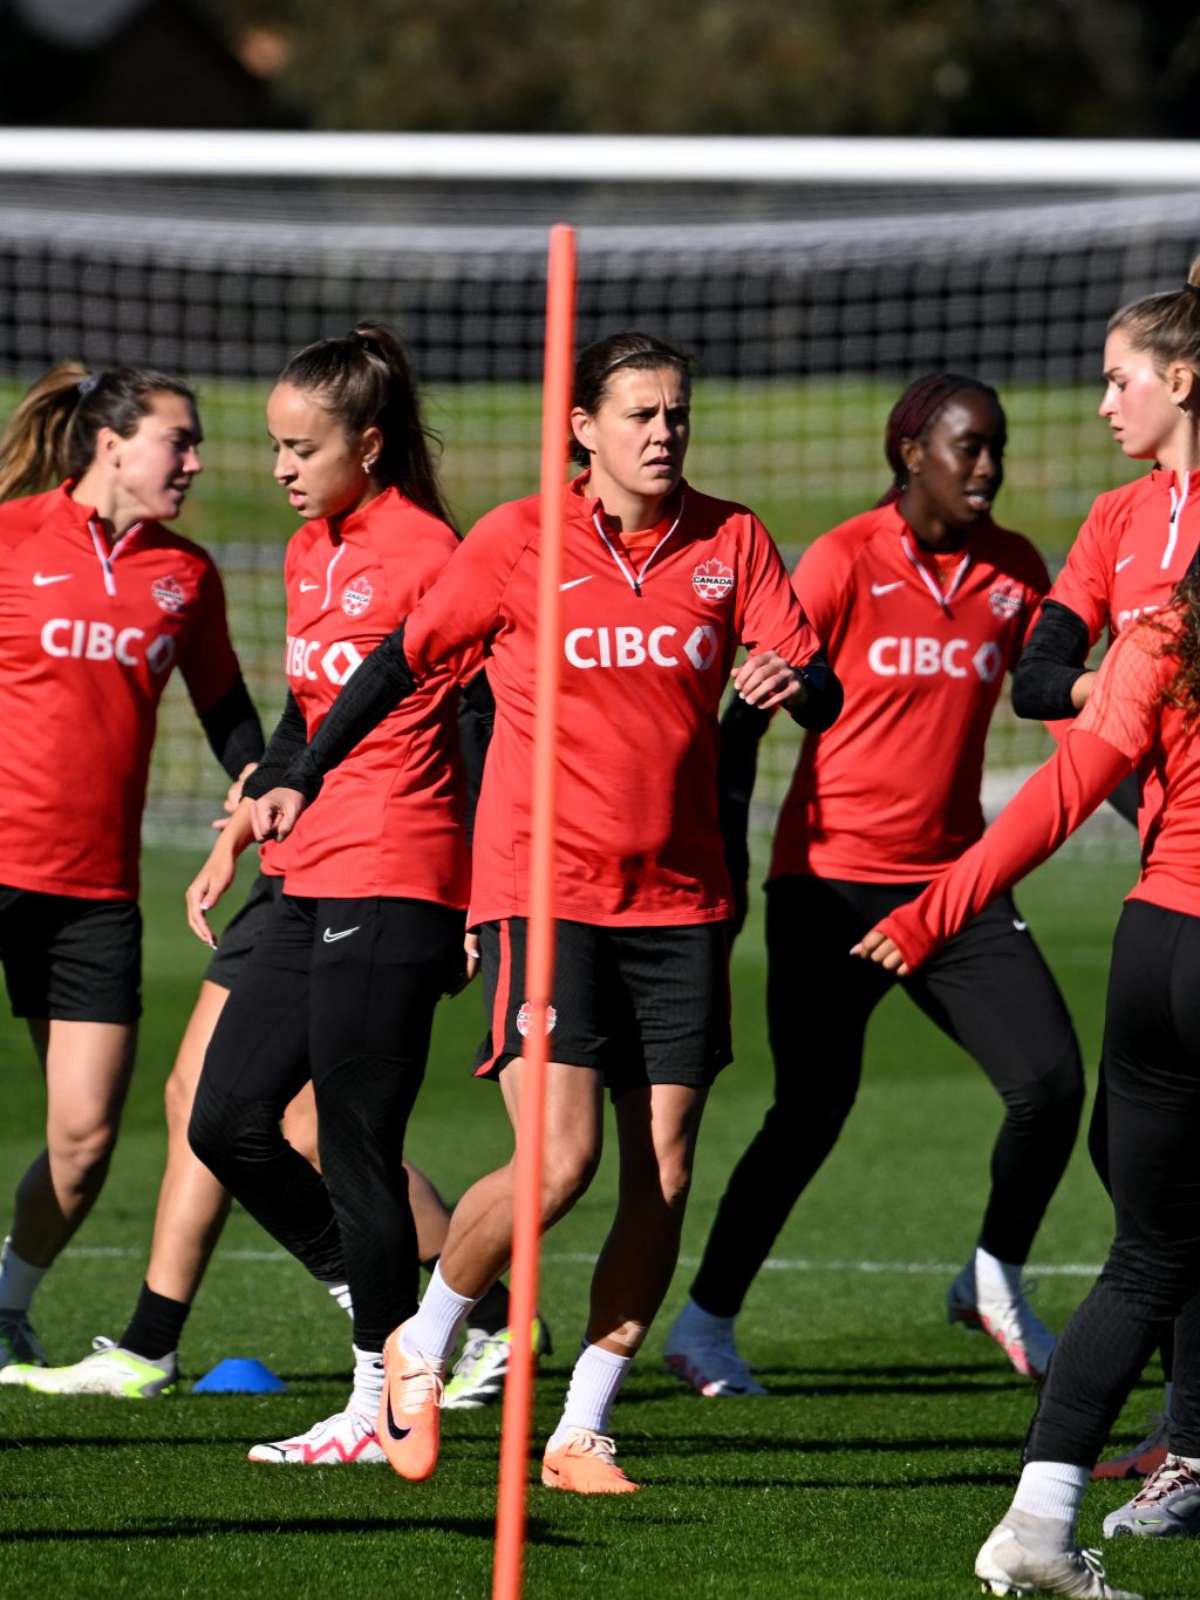 Nigéria surpreende ao empatar diante do favorito Canadá - Mundial Futebol  Feminino - SAPO Desporto